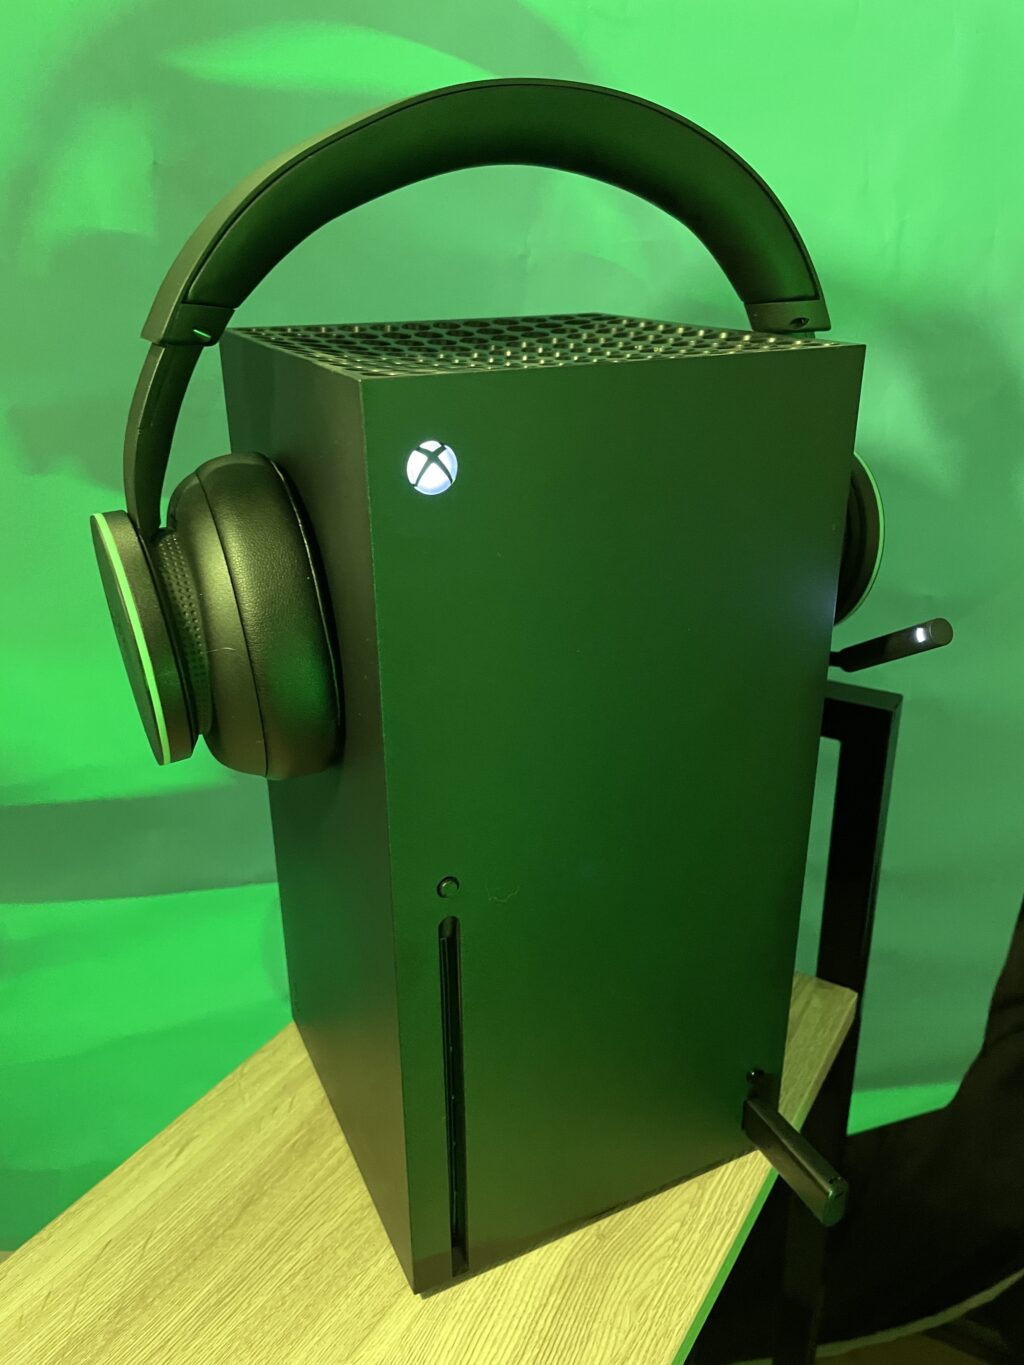 Probamos los audífonos inalámbricos de Xbox: ¿Valen la pena? 